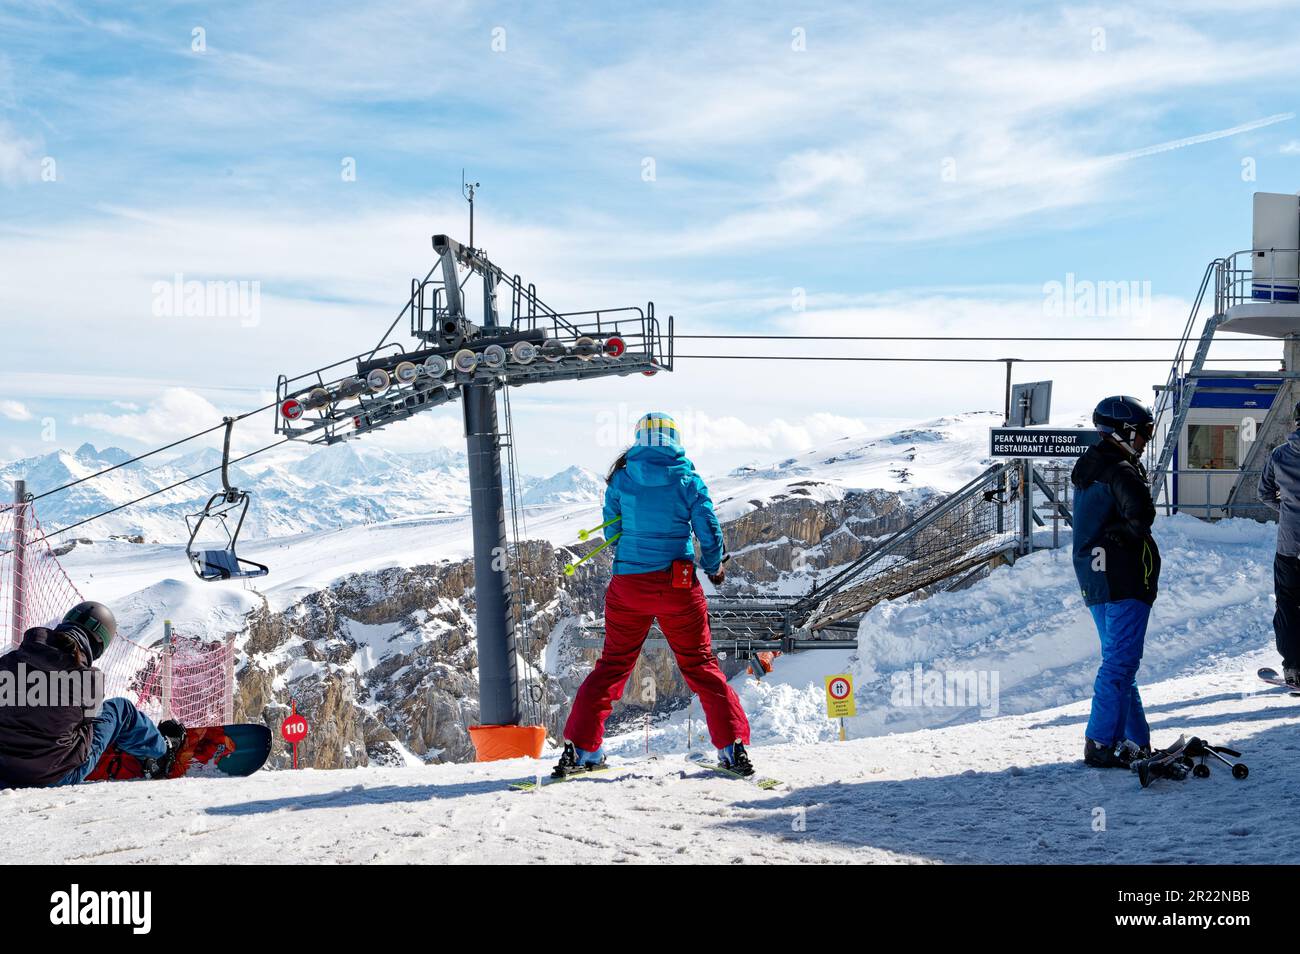 Rette und unterstütze die Skifahrerin, die sich auf den Abstieg vom Gipfel vorbereitet. Personal des Skigebiets in Les Diablerets, Glacier 3000. Stockfoto